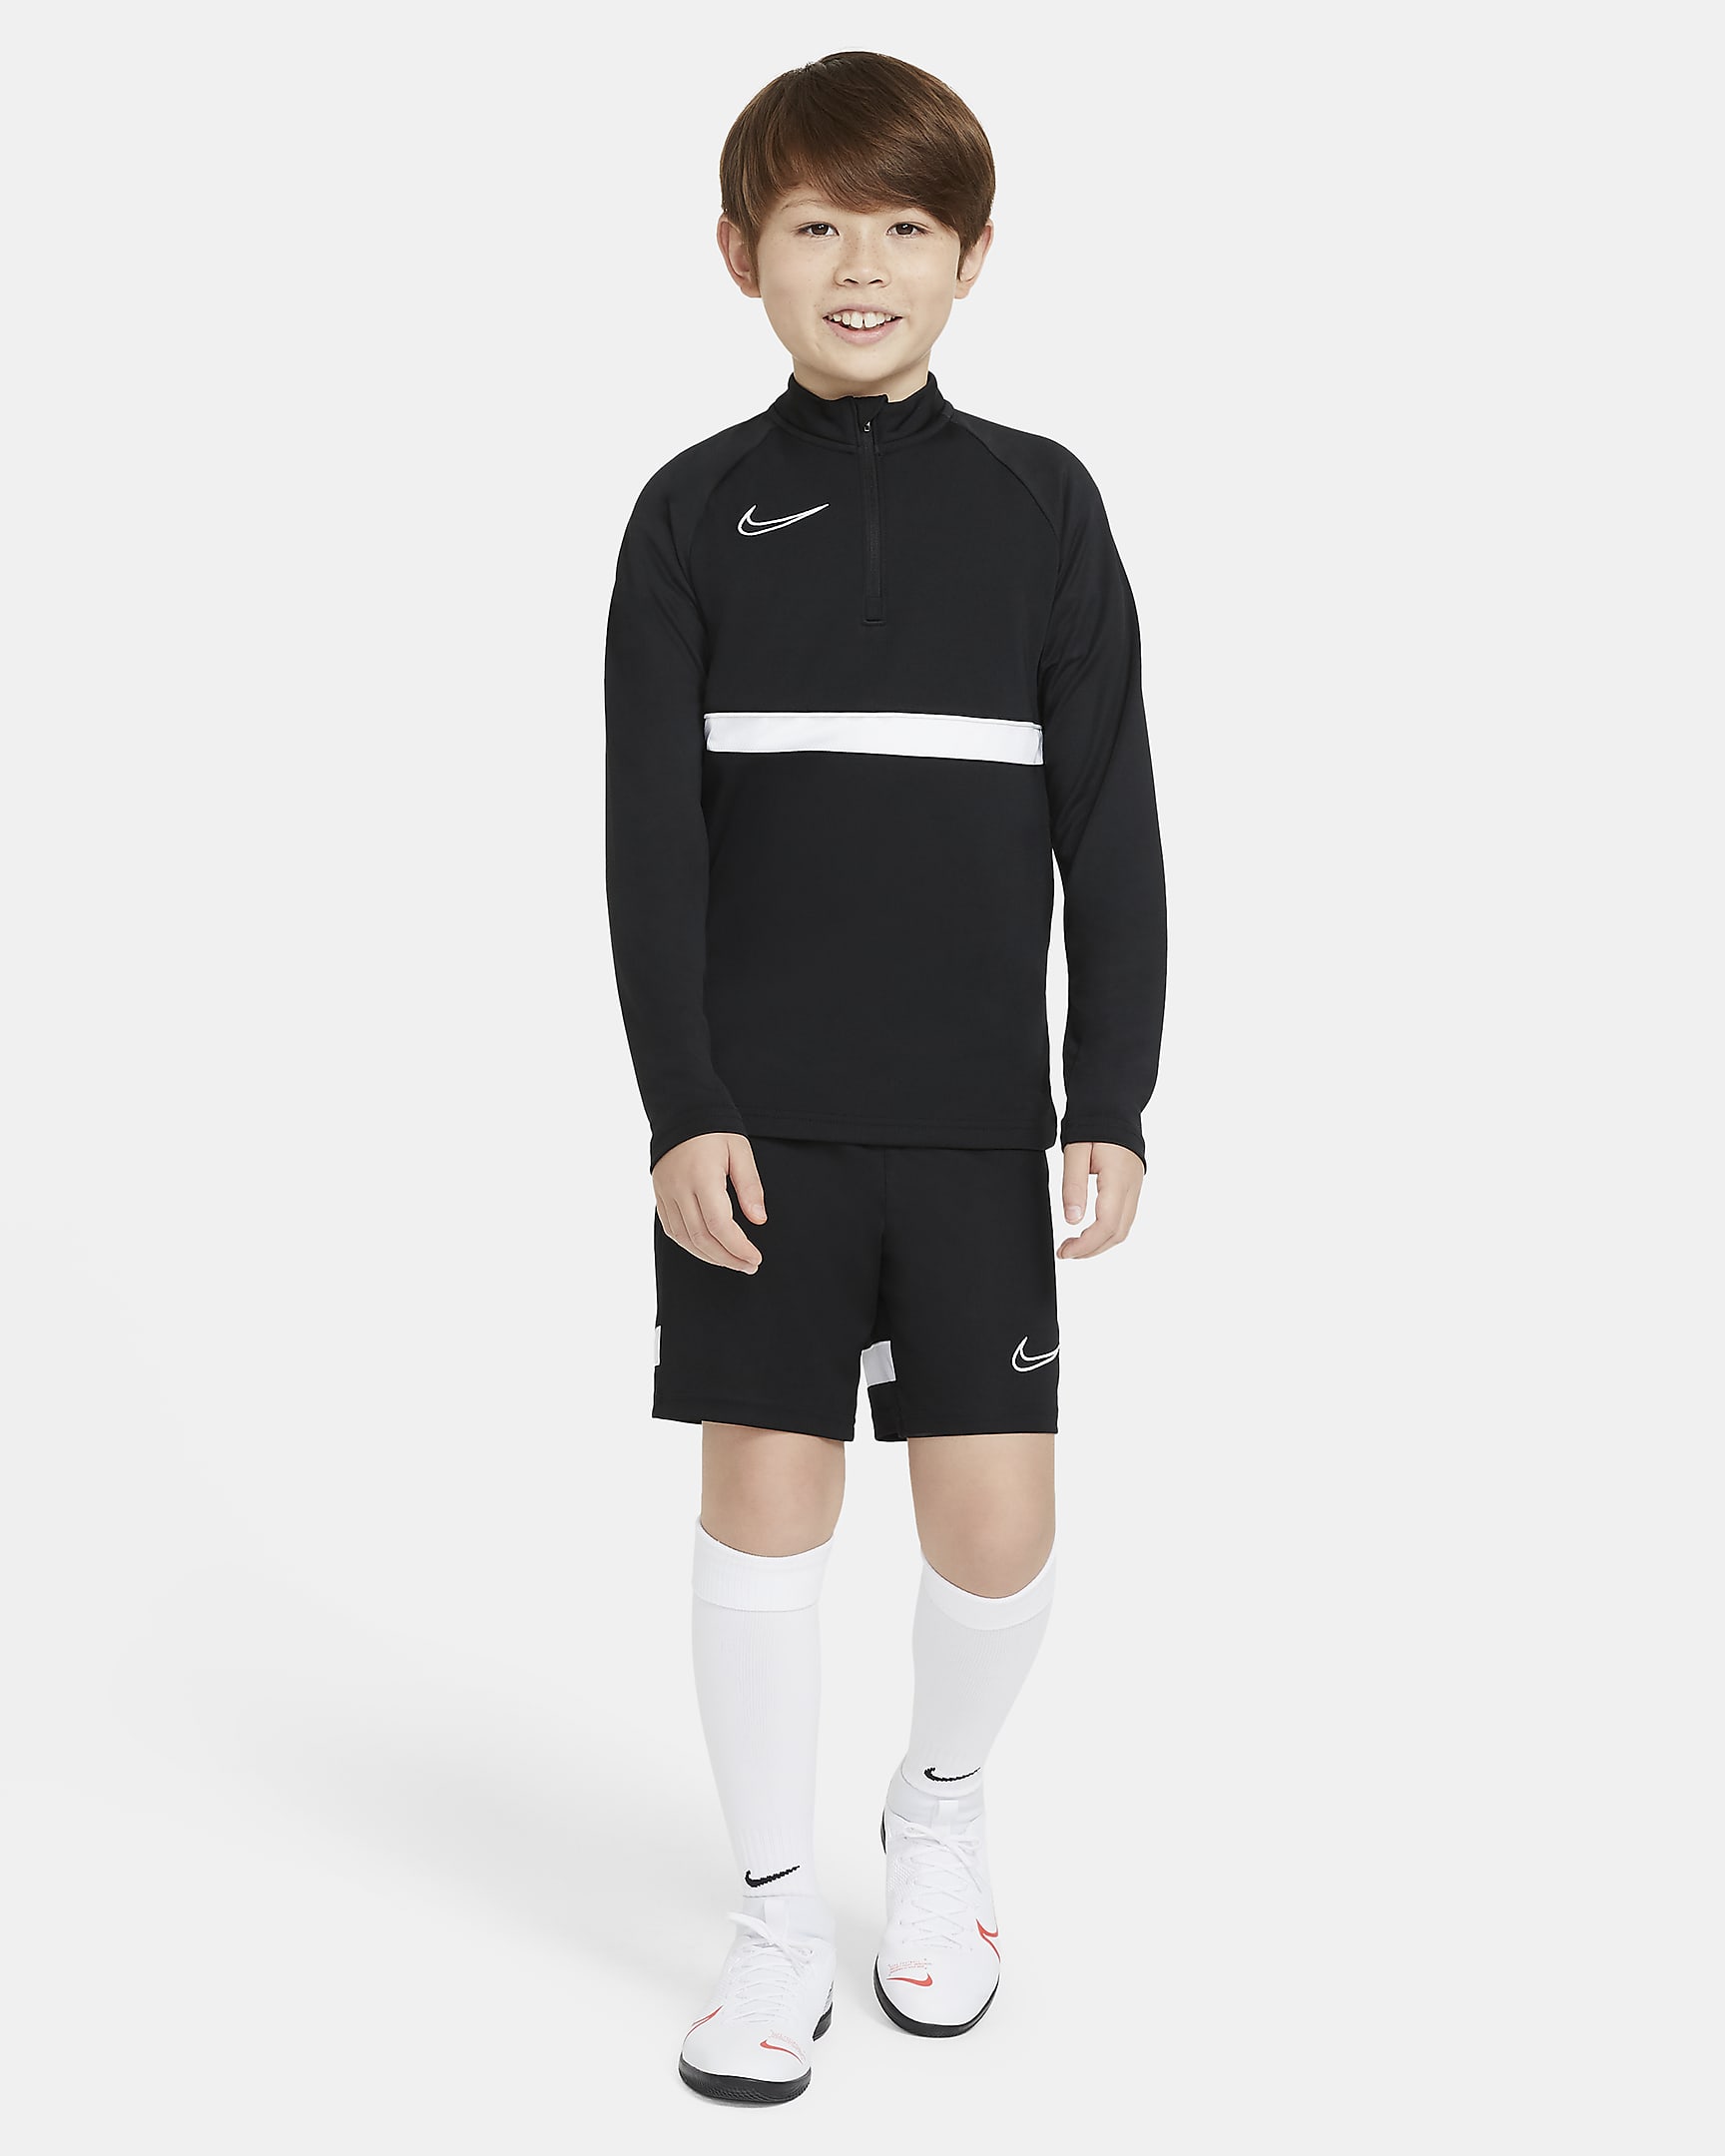 Nike Dri-FIT Academy Big Kids' Soccer Drill Top. Nike.com